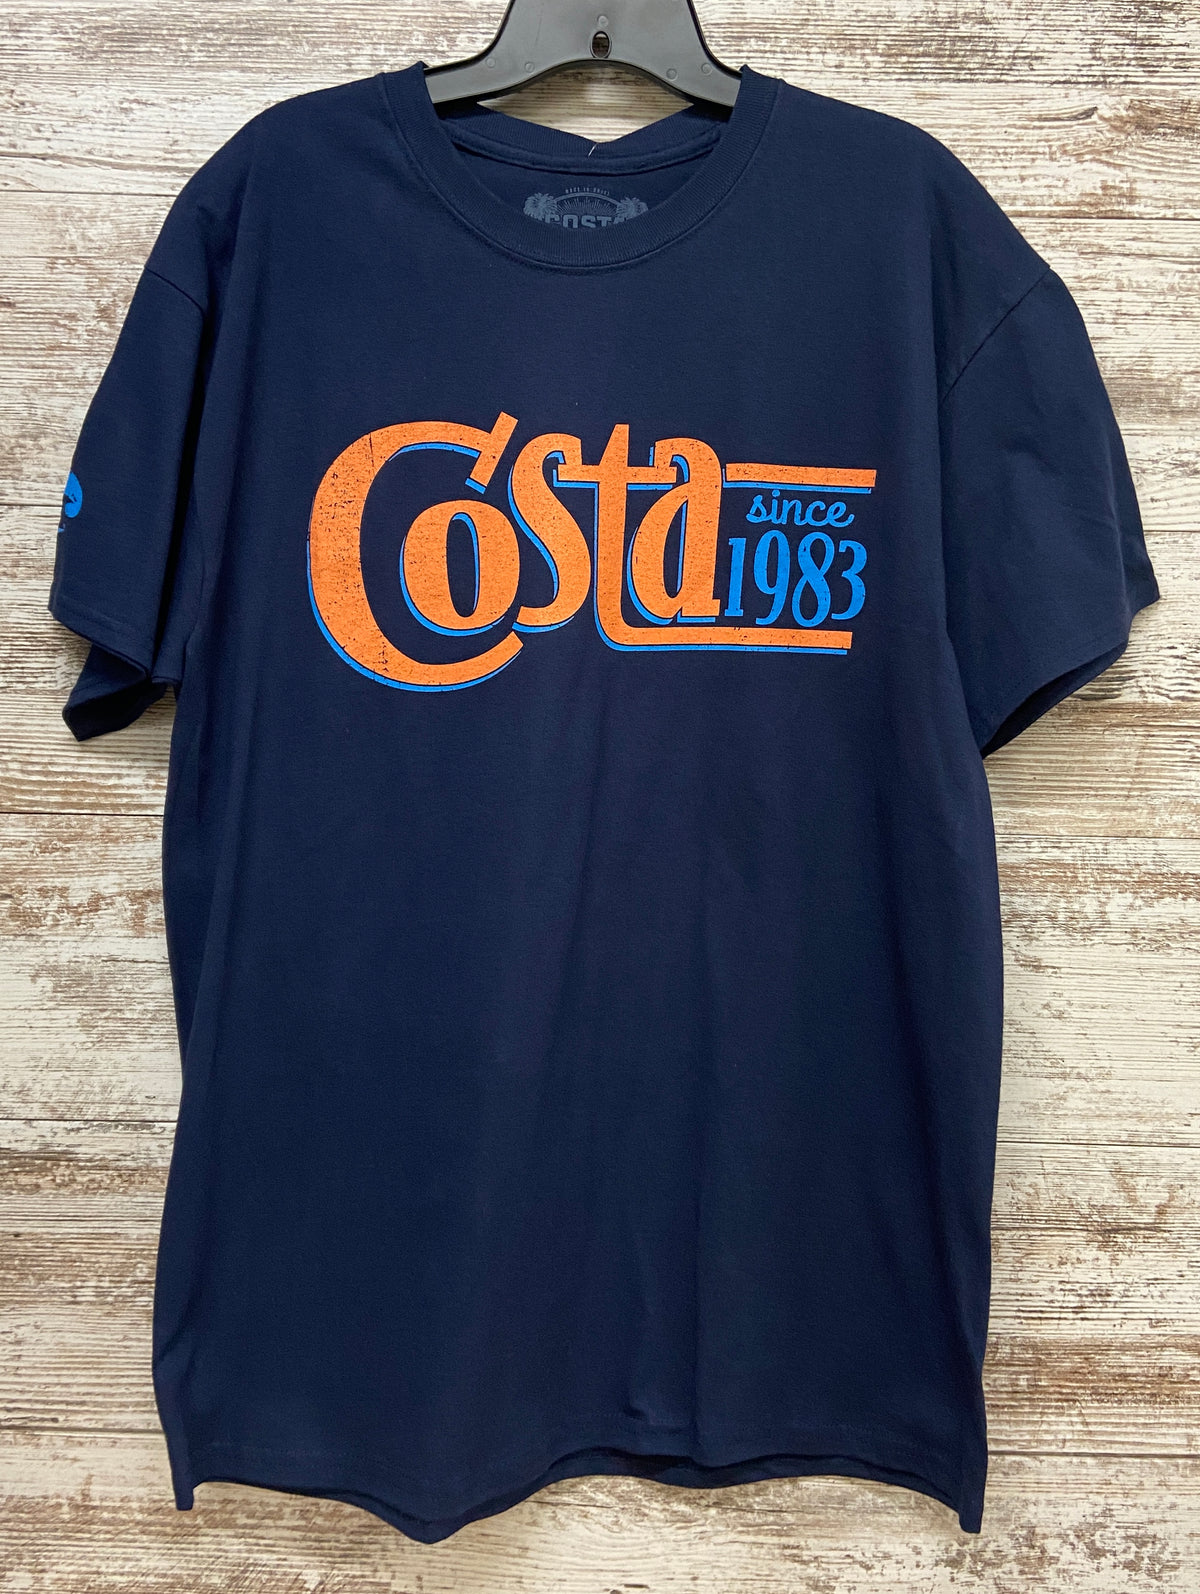 Since &#39;83 Costa T-Shirt